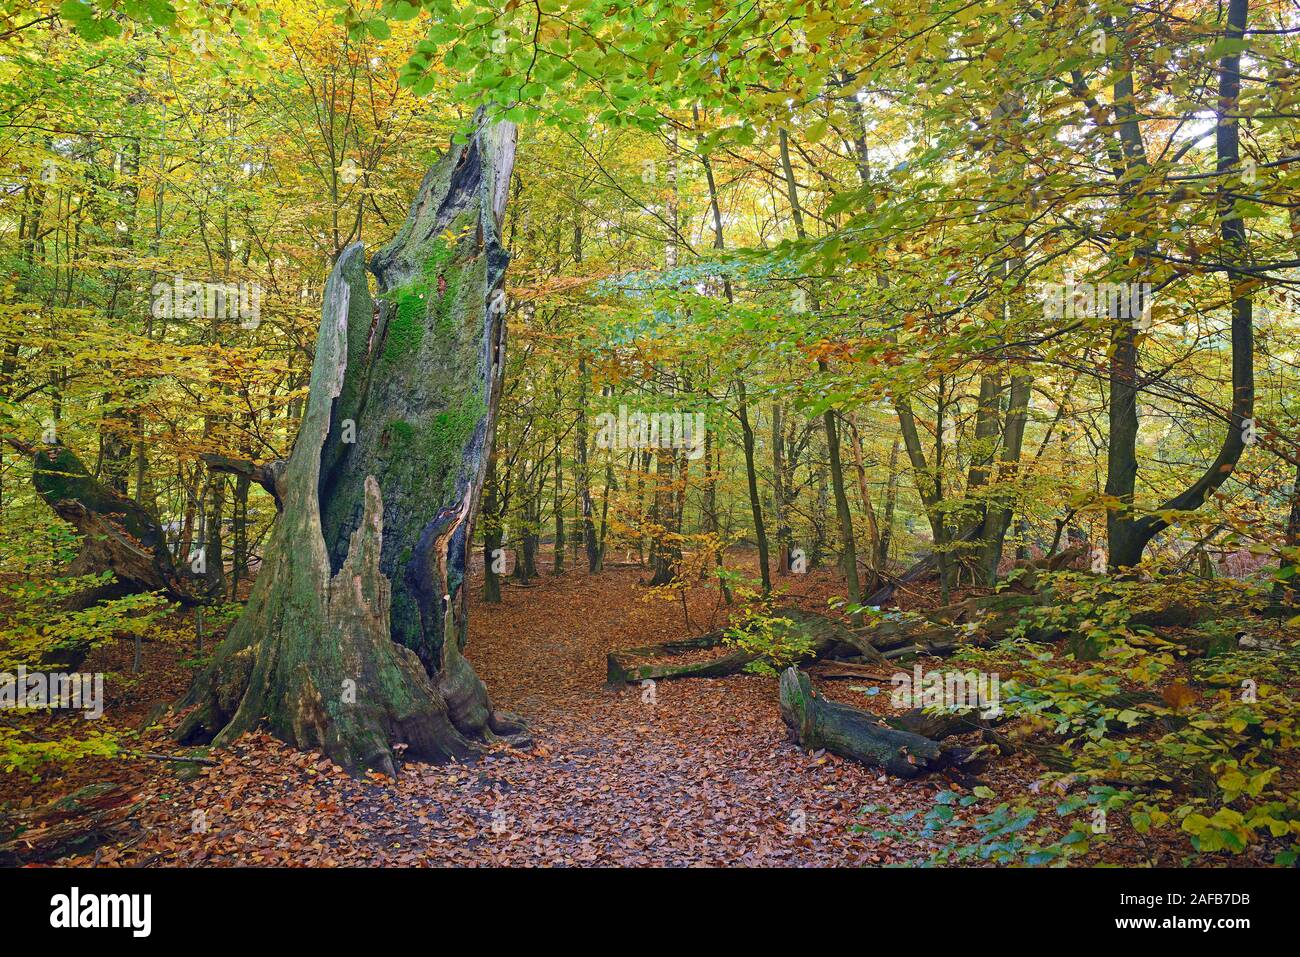 Ca. 800 Jahre alte Eiche (Fagus) im Herbst, Urwald Sababurg Naturschutzgebiet, Hesse, Germany, Europe Banque D'Images